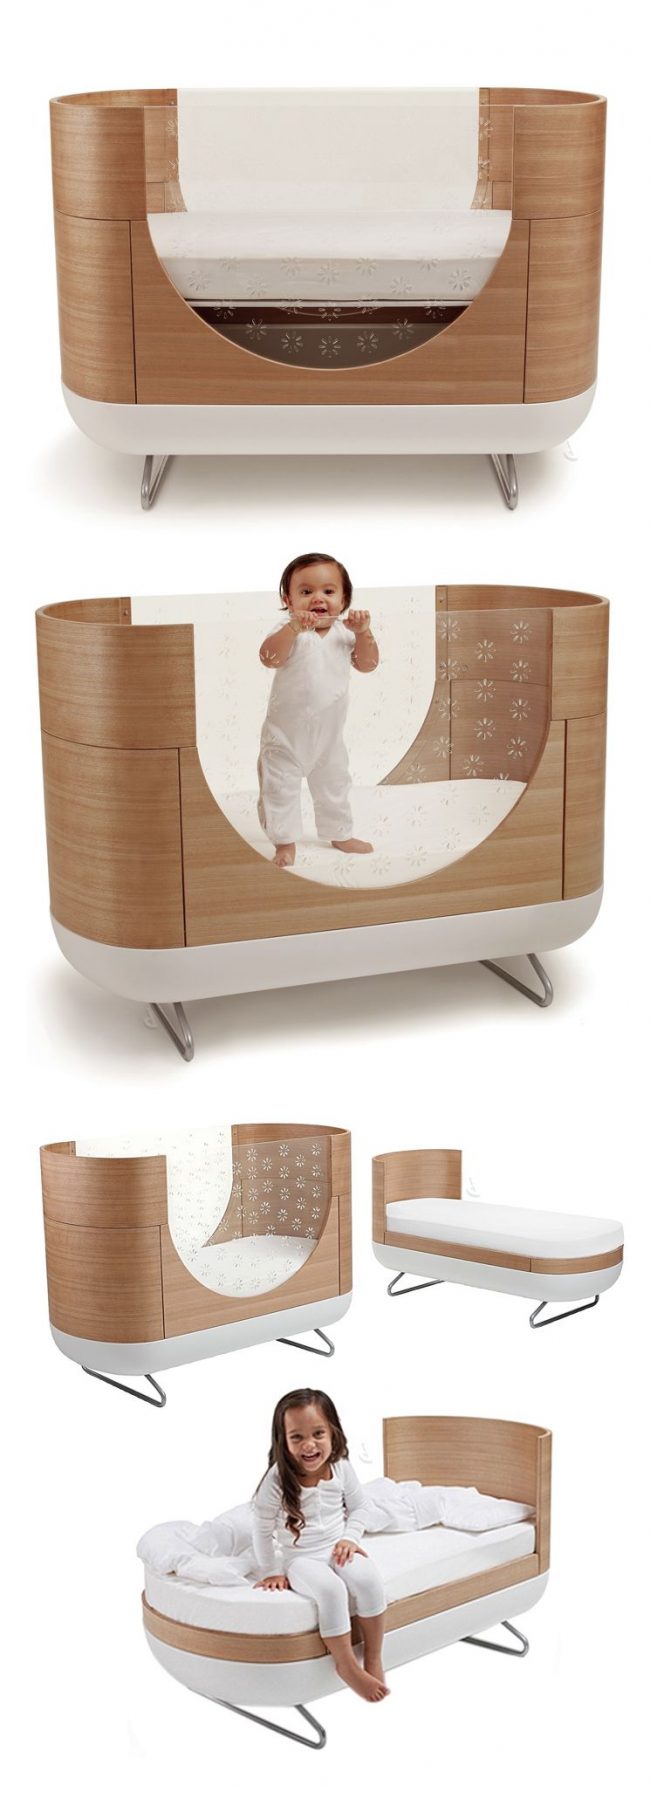 سرير الأطفال المتحول مناسب للاستخدام وسيوفر لك المال والمساحة في الغرفة